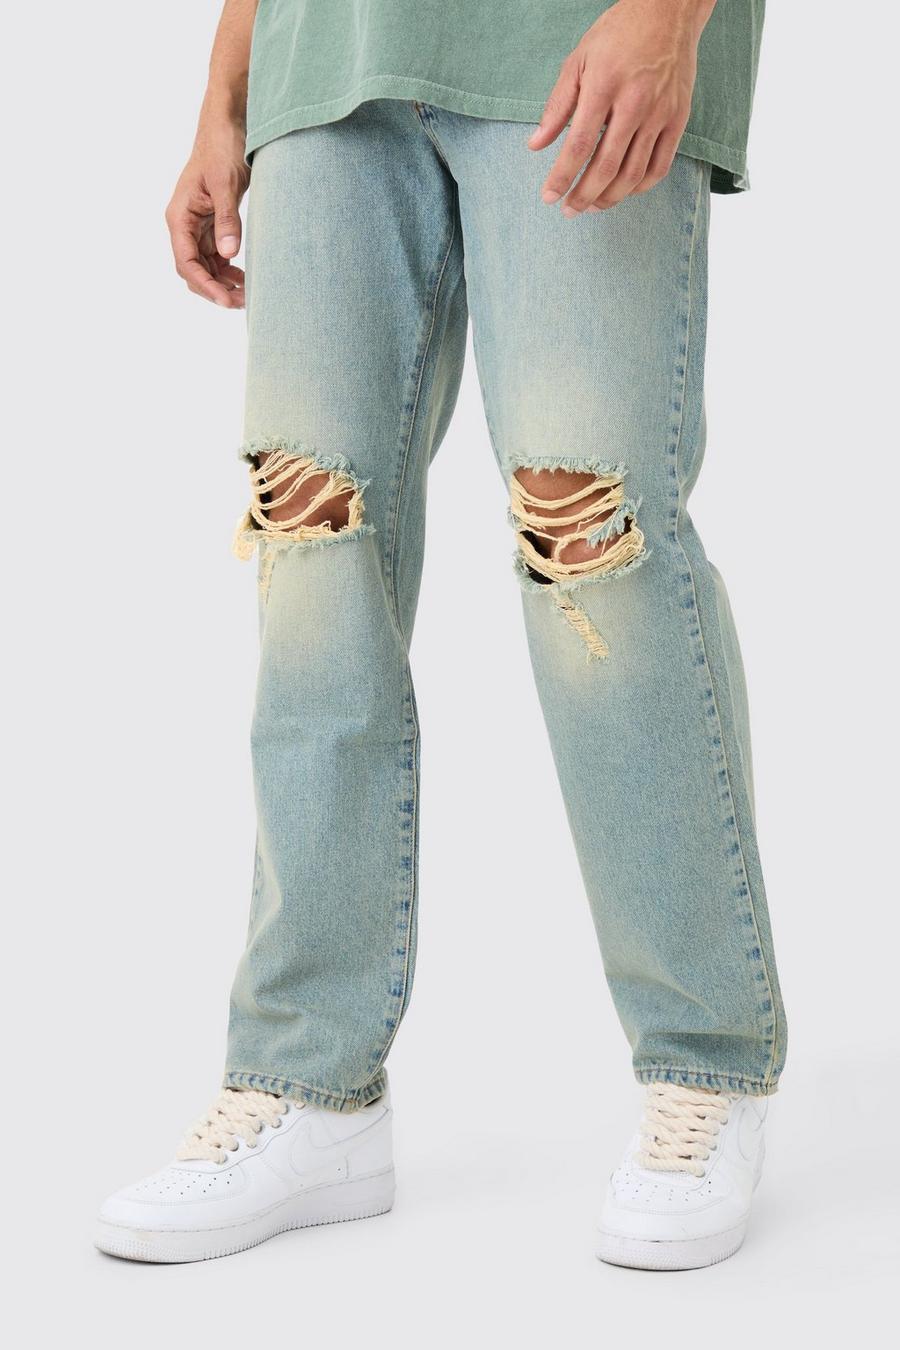 Jeans rilassati in denim rigido blu antico con strappi sul ginocchio, Antique blue